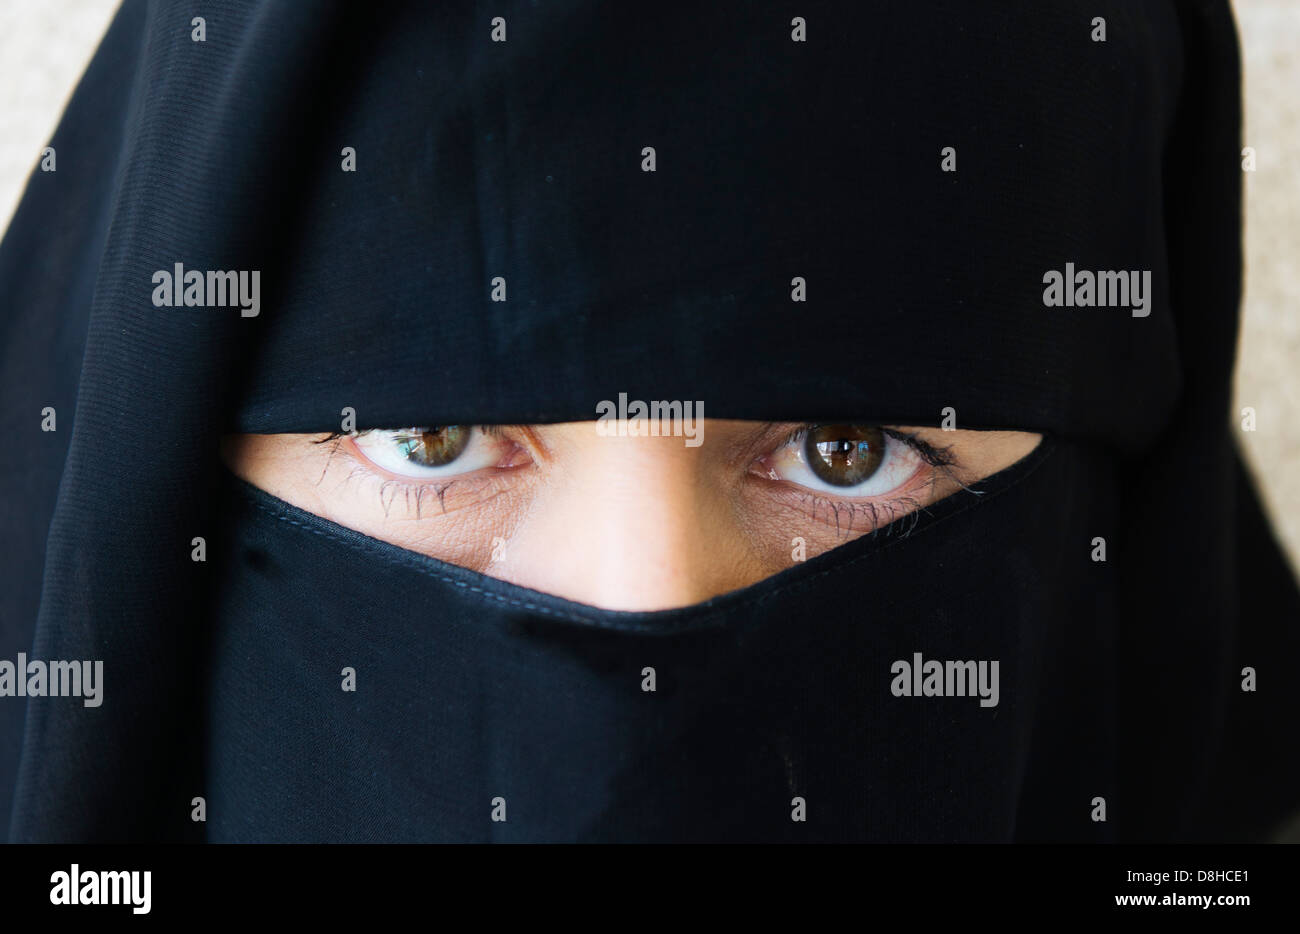 Femme arabe portant le niqab noir traditionnel couvrant face Banque D'Images